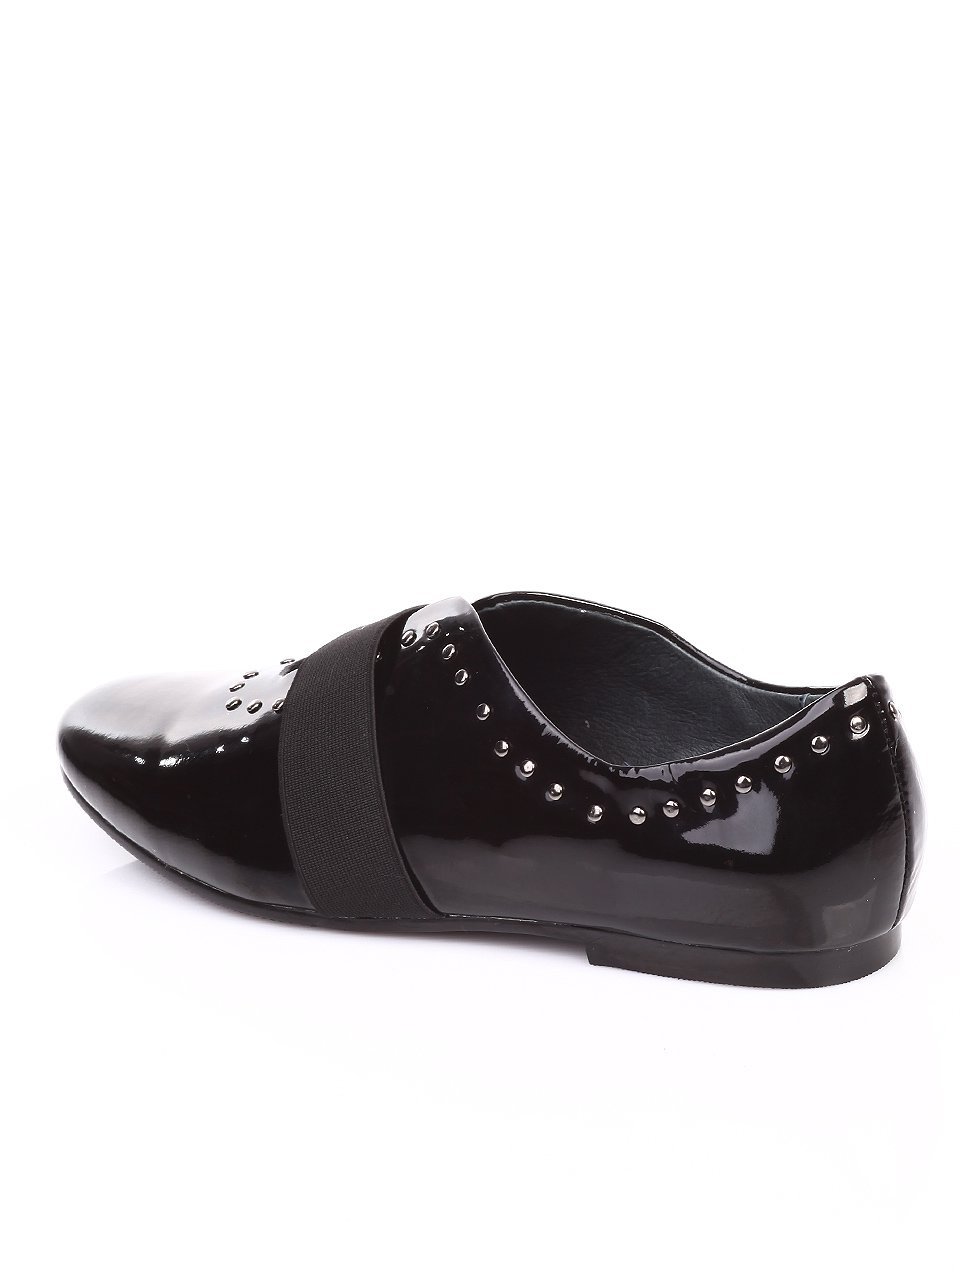 Ежедневни дамски обувки от естествен лак 3I-17488 black